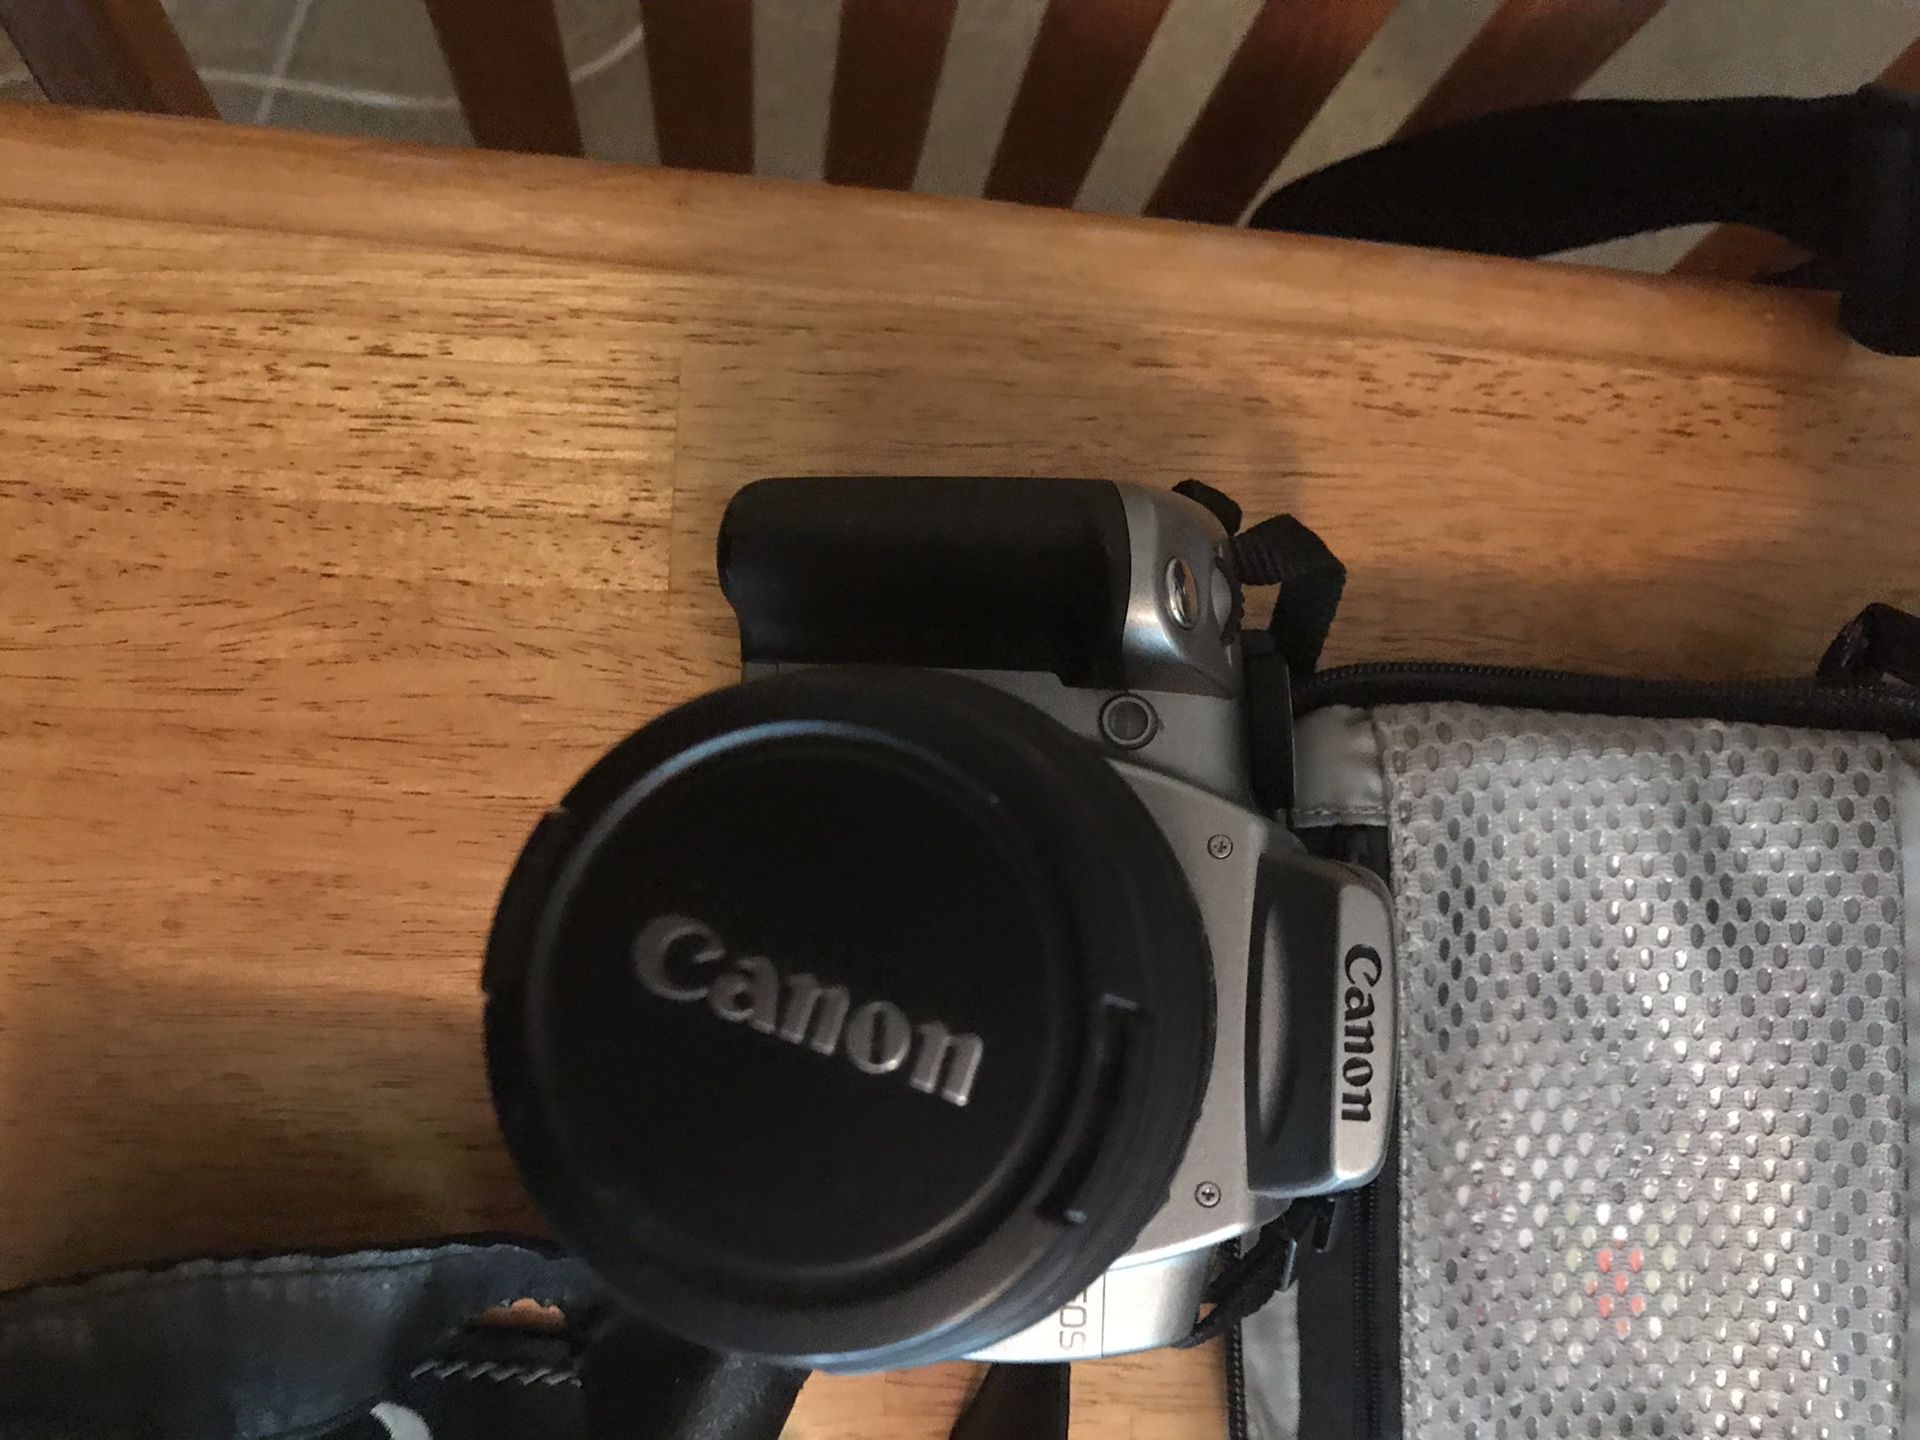 Canon rebel xt digital camera